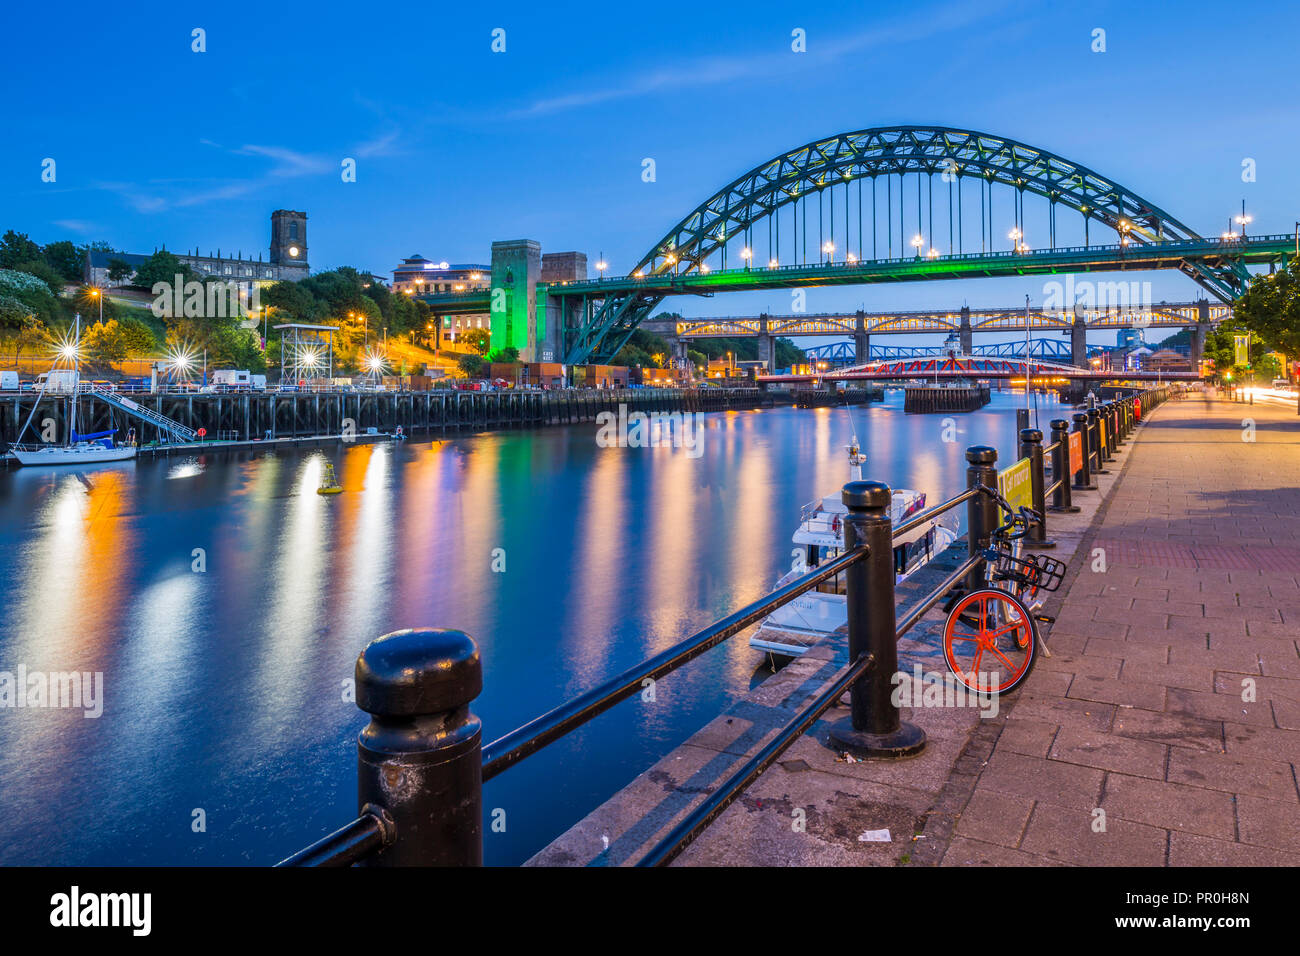 Vue de la rivière Tyne et Tyne Bridge at Dusk, Newcastle-upon-Tyne, Tyne et Wear, Angleterre, Royaume-Uni, Europe Banque D'Images